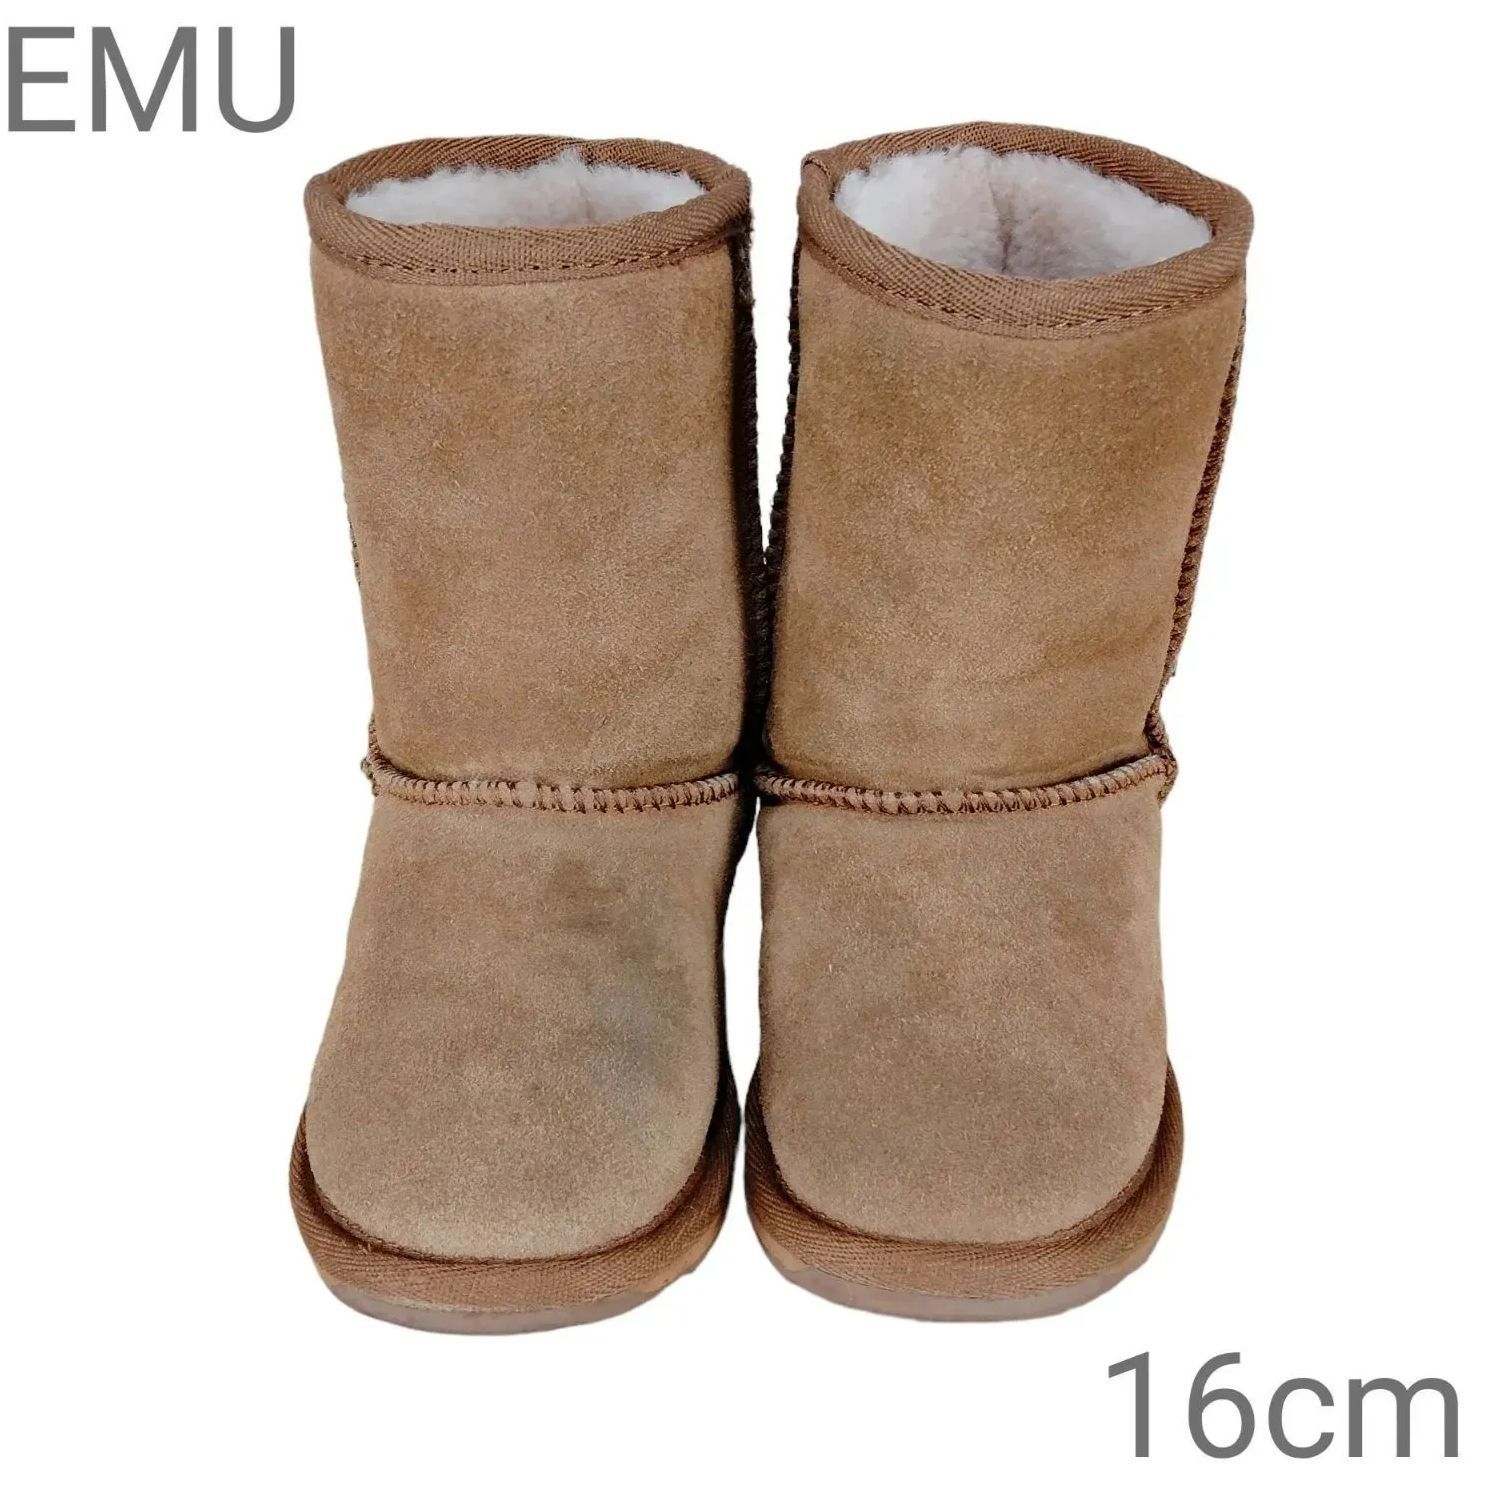 EMU キッズムートンブーツ 16cm - ブーツ